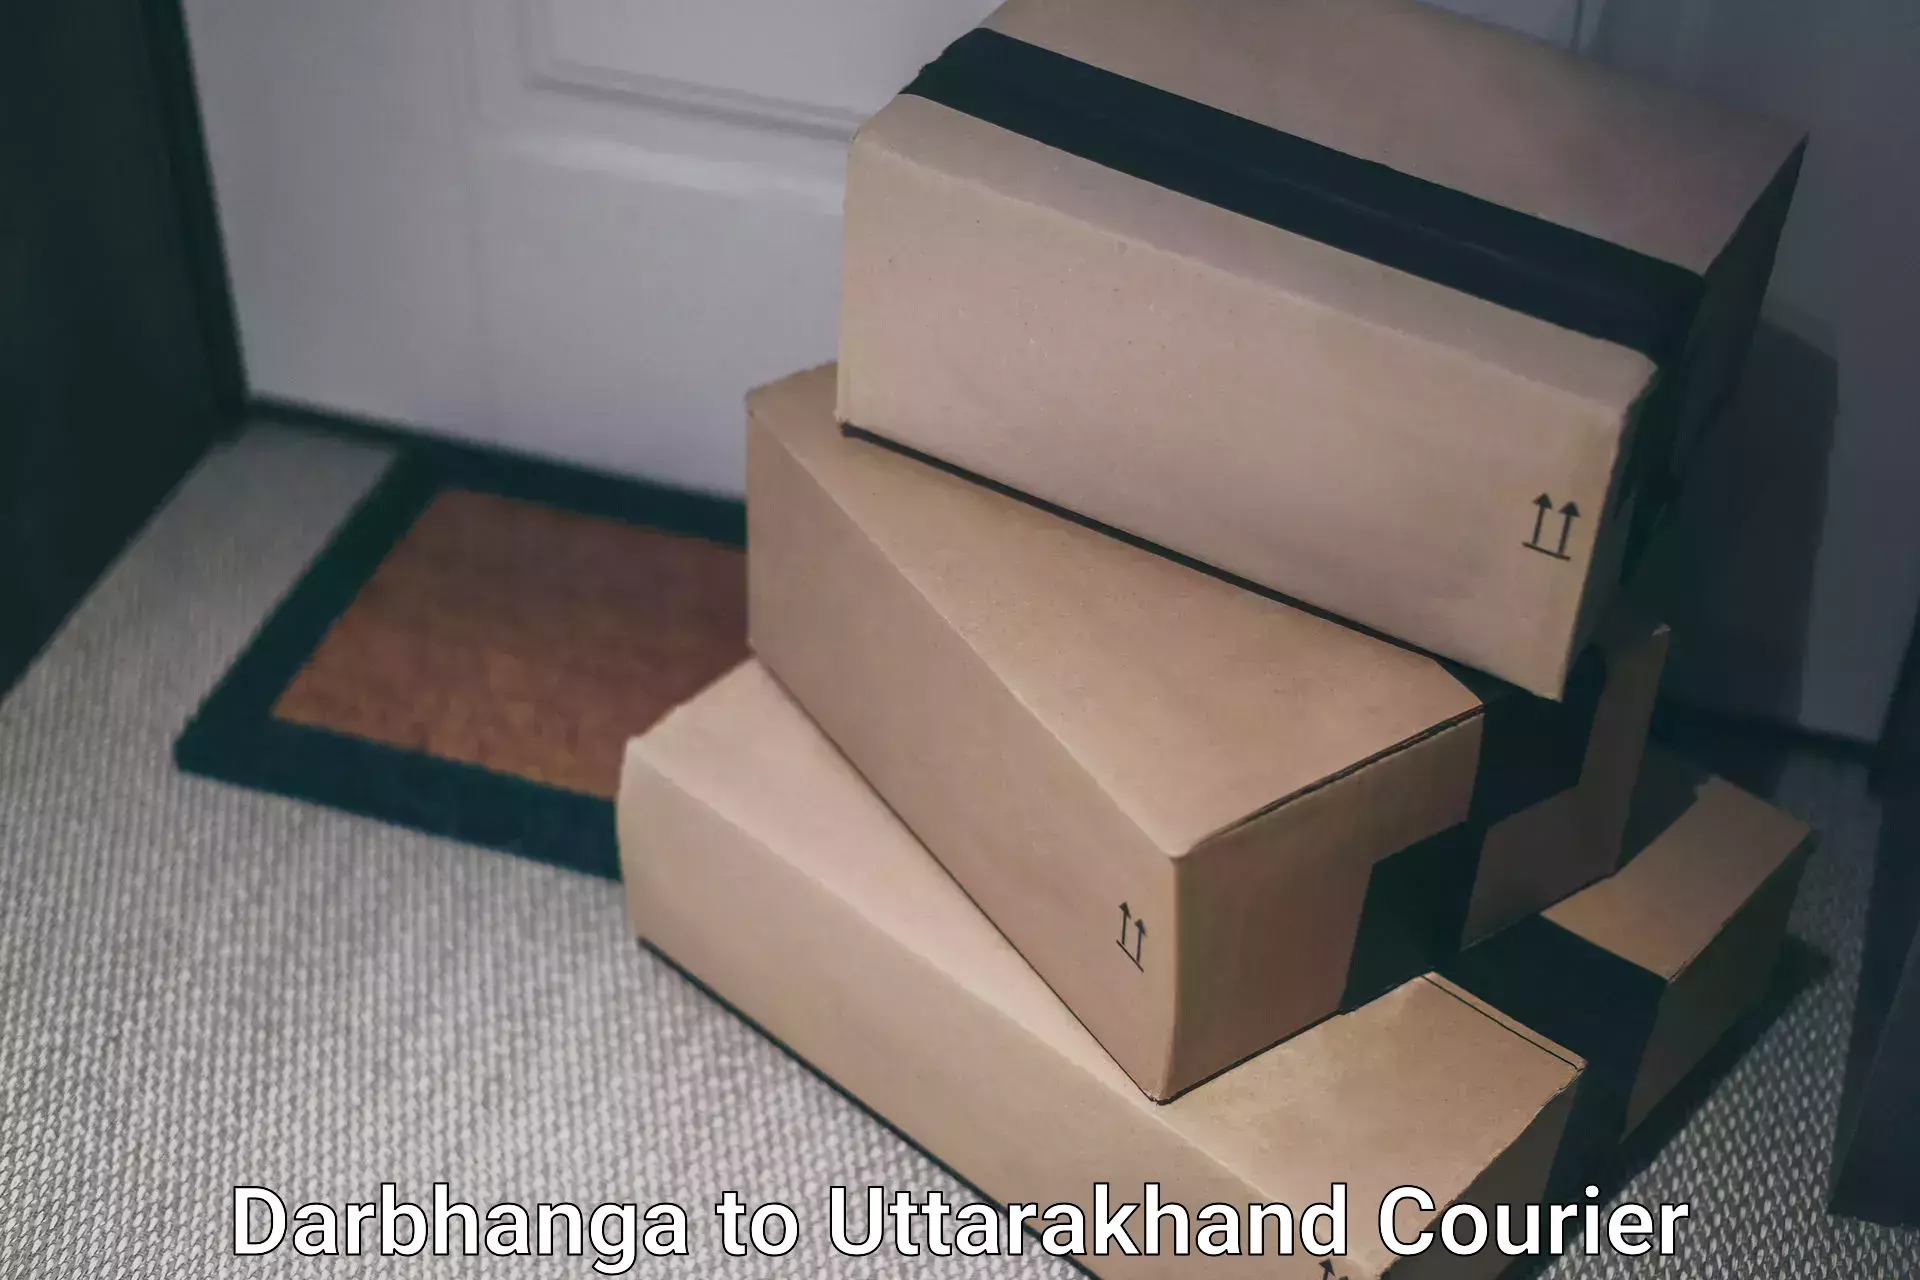 Global parcel delivery Darbhanga to Rudraprayag